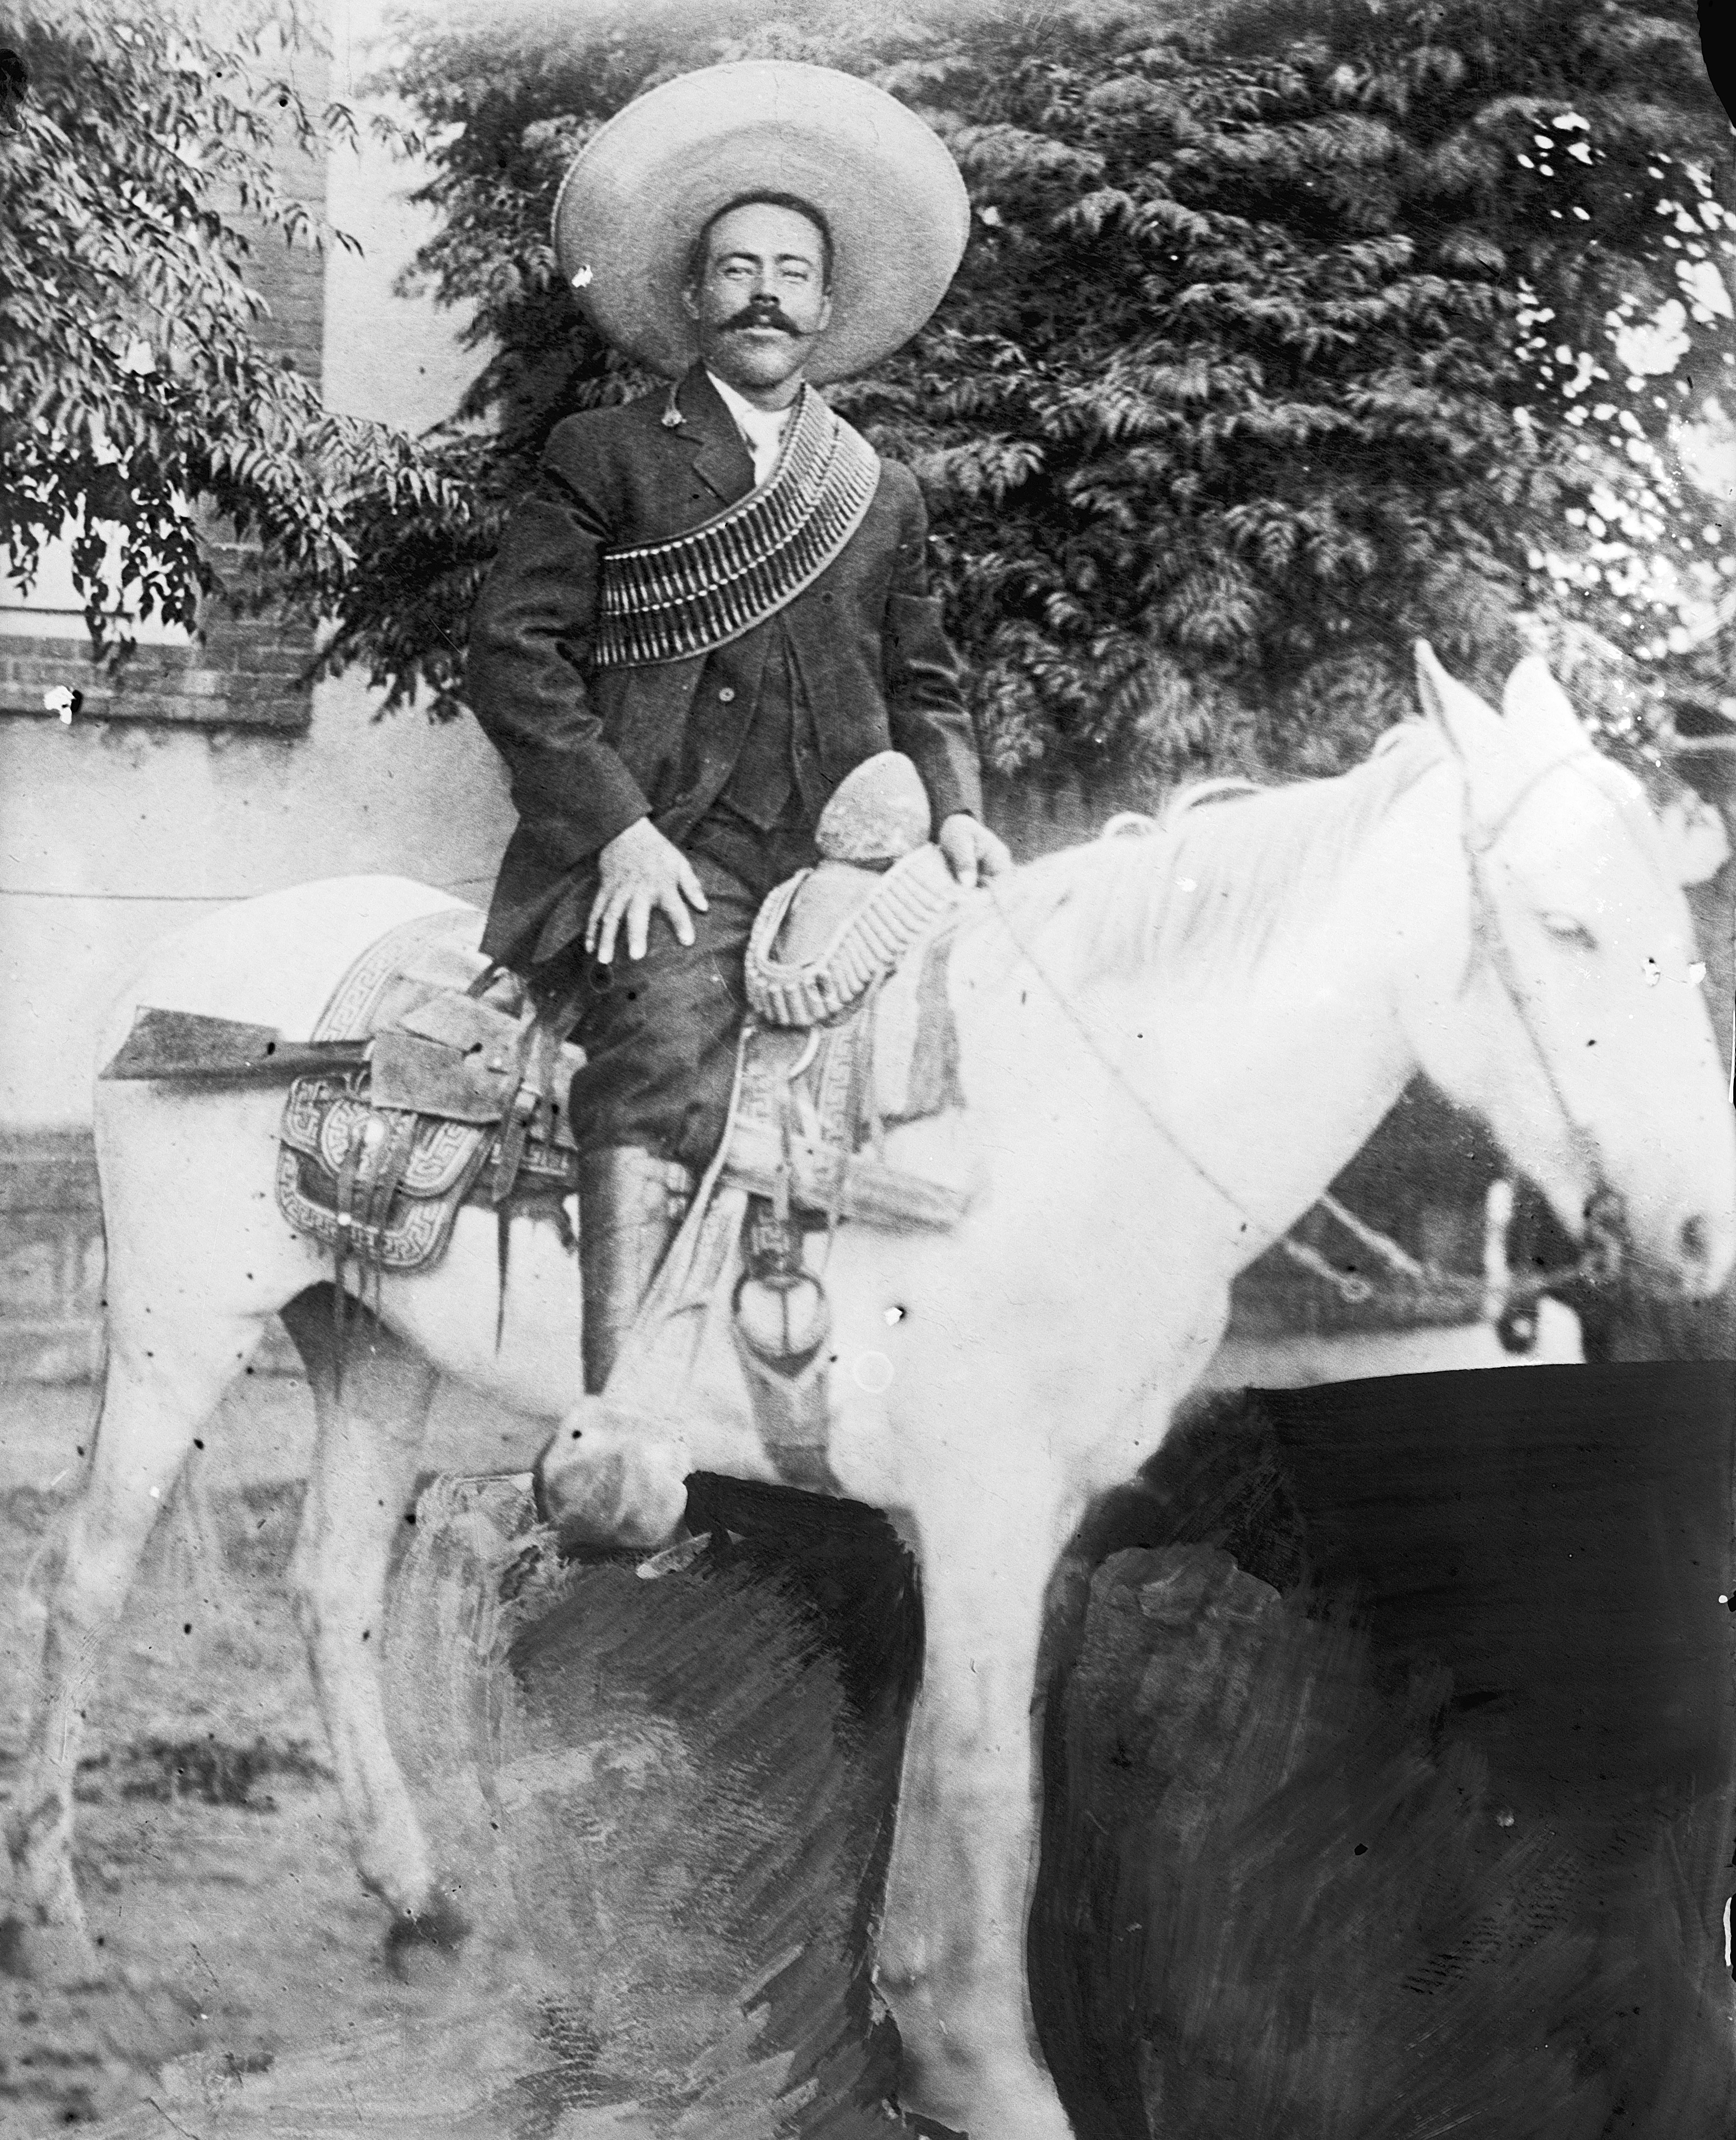 auteur Pancho Villa de la citation Le cafard, le cafard, vous ne voulez plus marcher, parce que vous ne l'avez pas, car il manque de marijuana ce tabagisme.